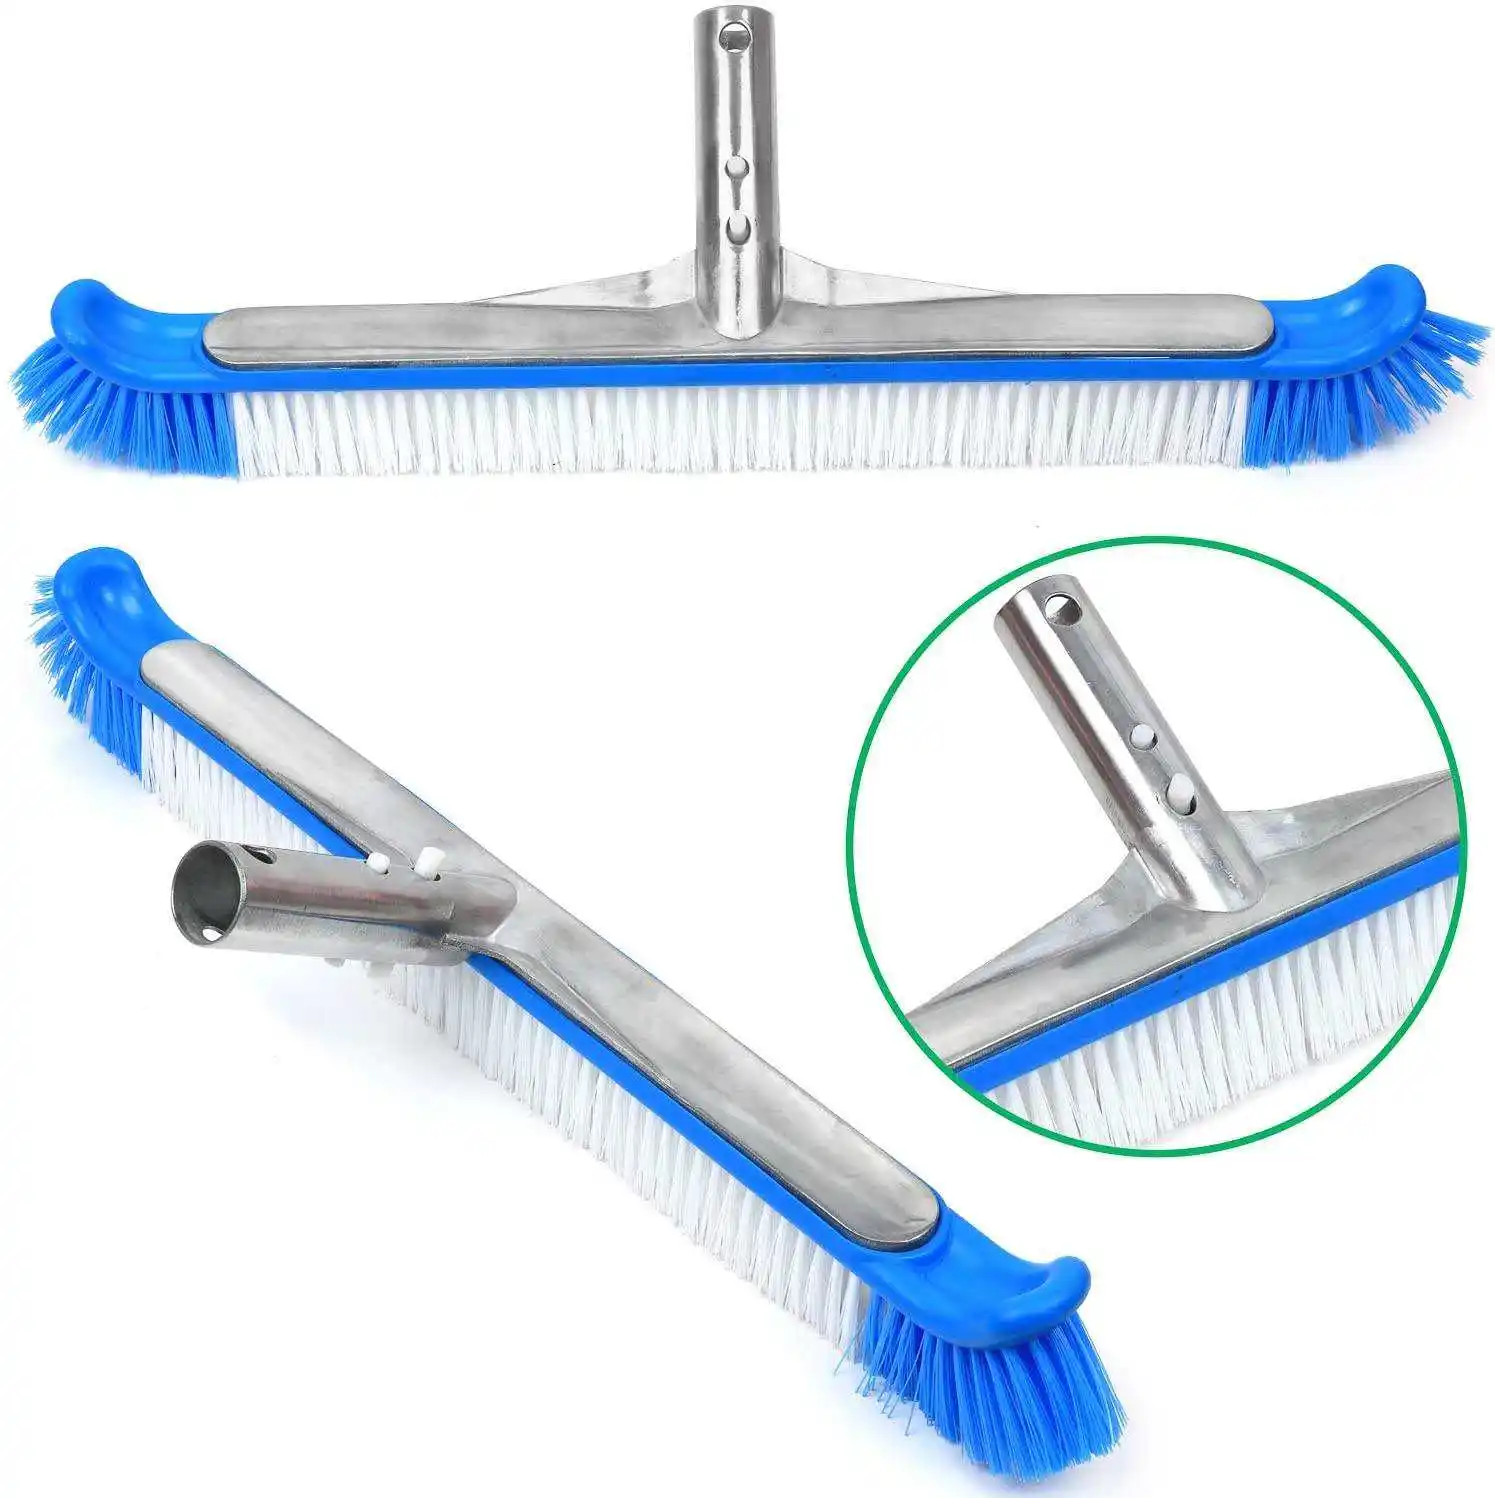 Poolzubehör Bürste leichtes und flexibles Reinigungswerkzeug Schmutzentferner